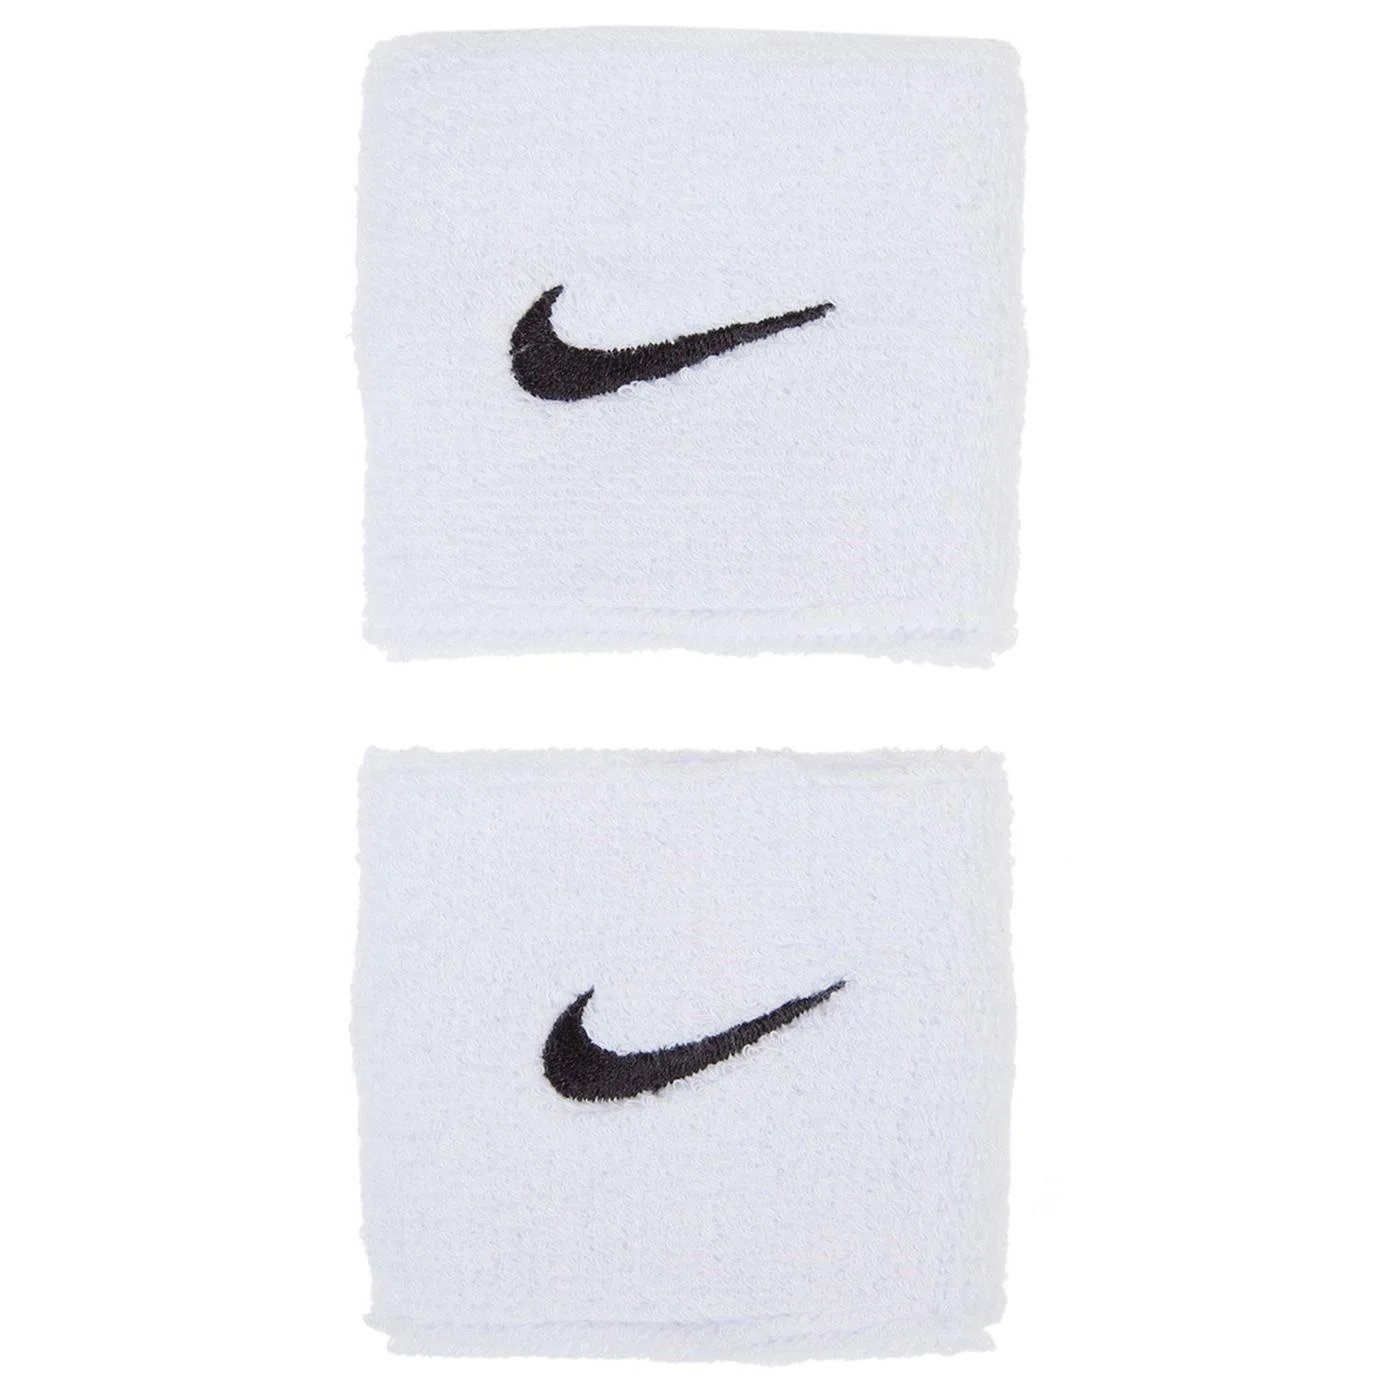 Nike Swoosh Wrıstbands 2 Pk Erkek Bileklik White - Black